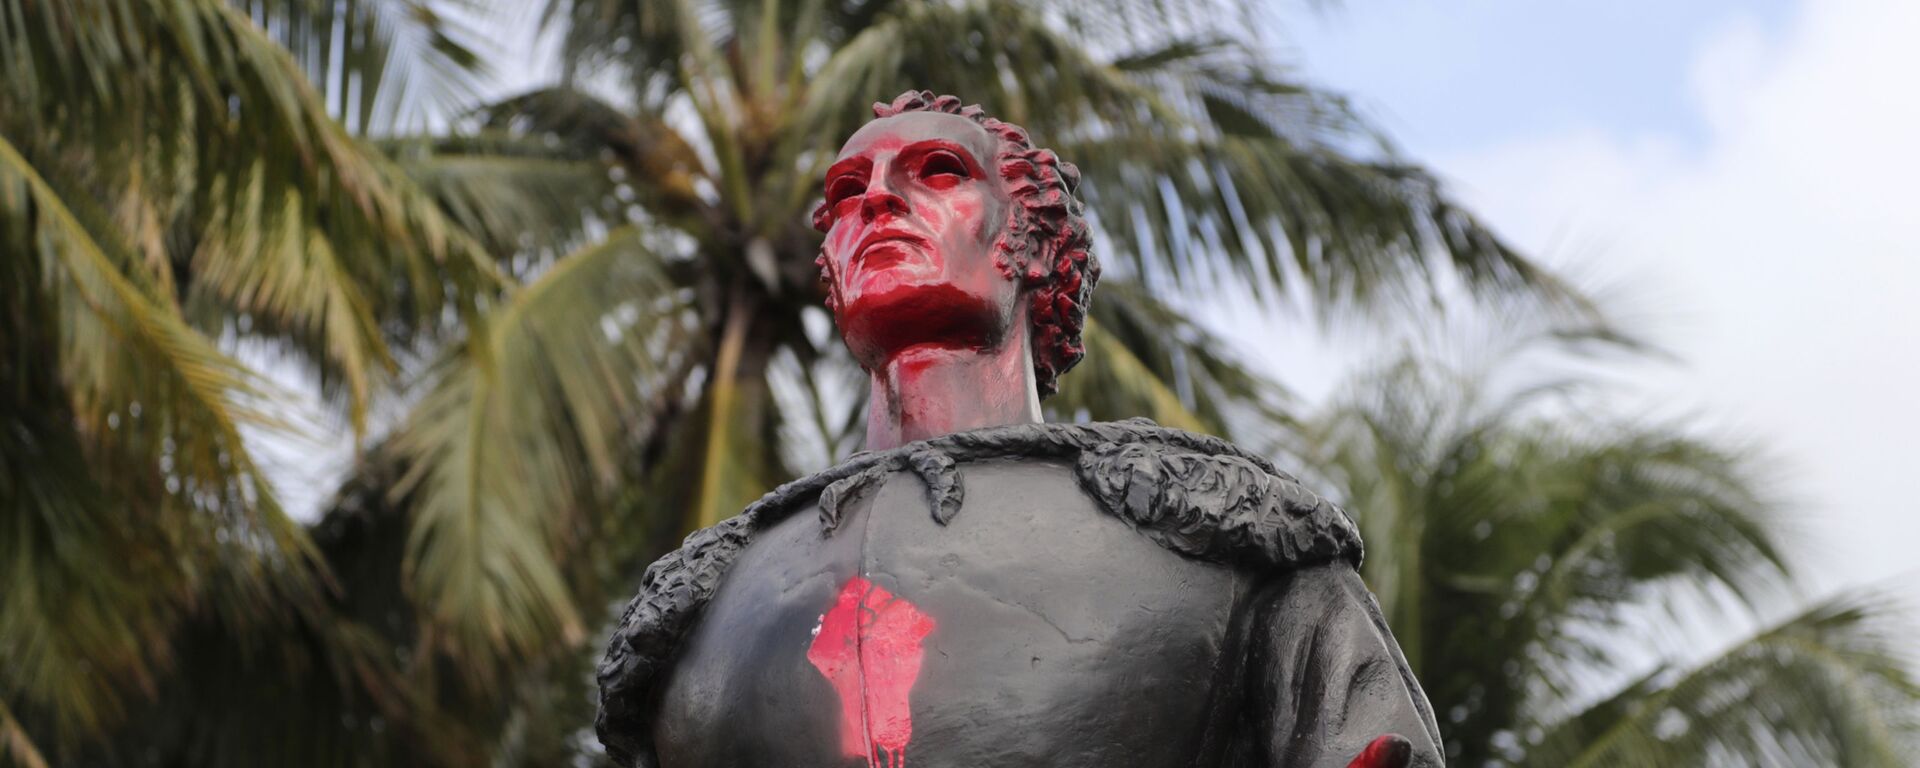 Una estatua de Cristóbal Colón en Miami - Sputnik Mundo, 1920, 11.05.2021